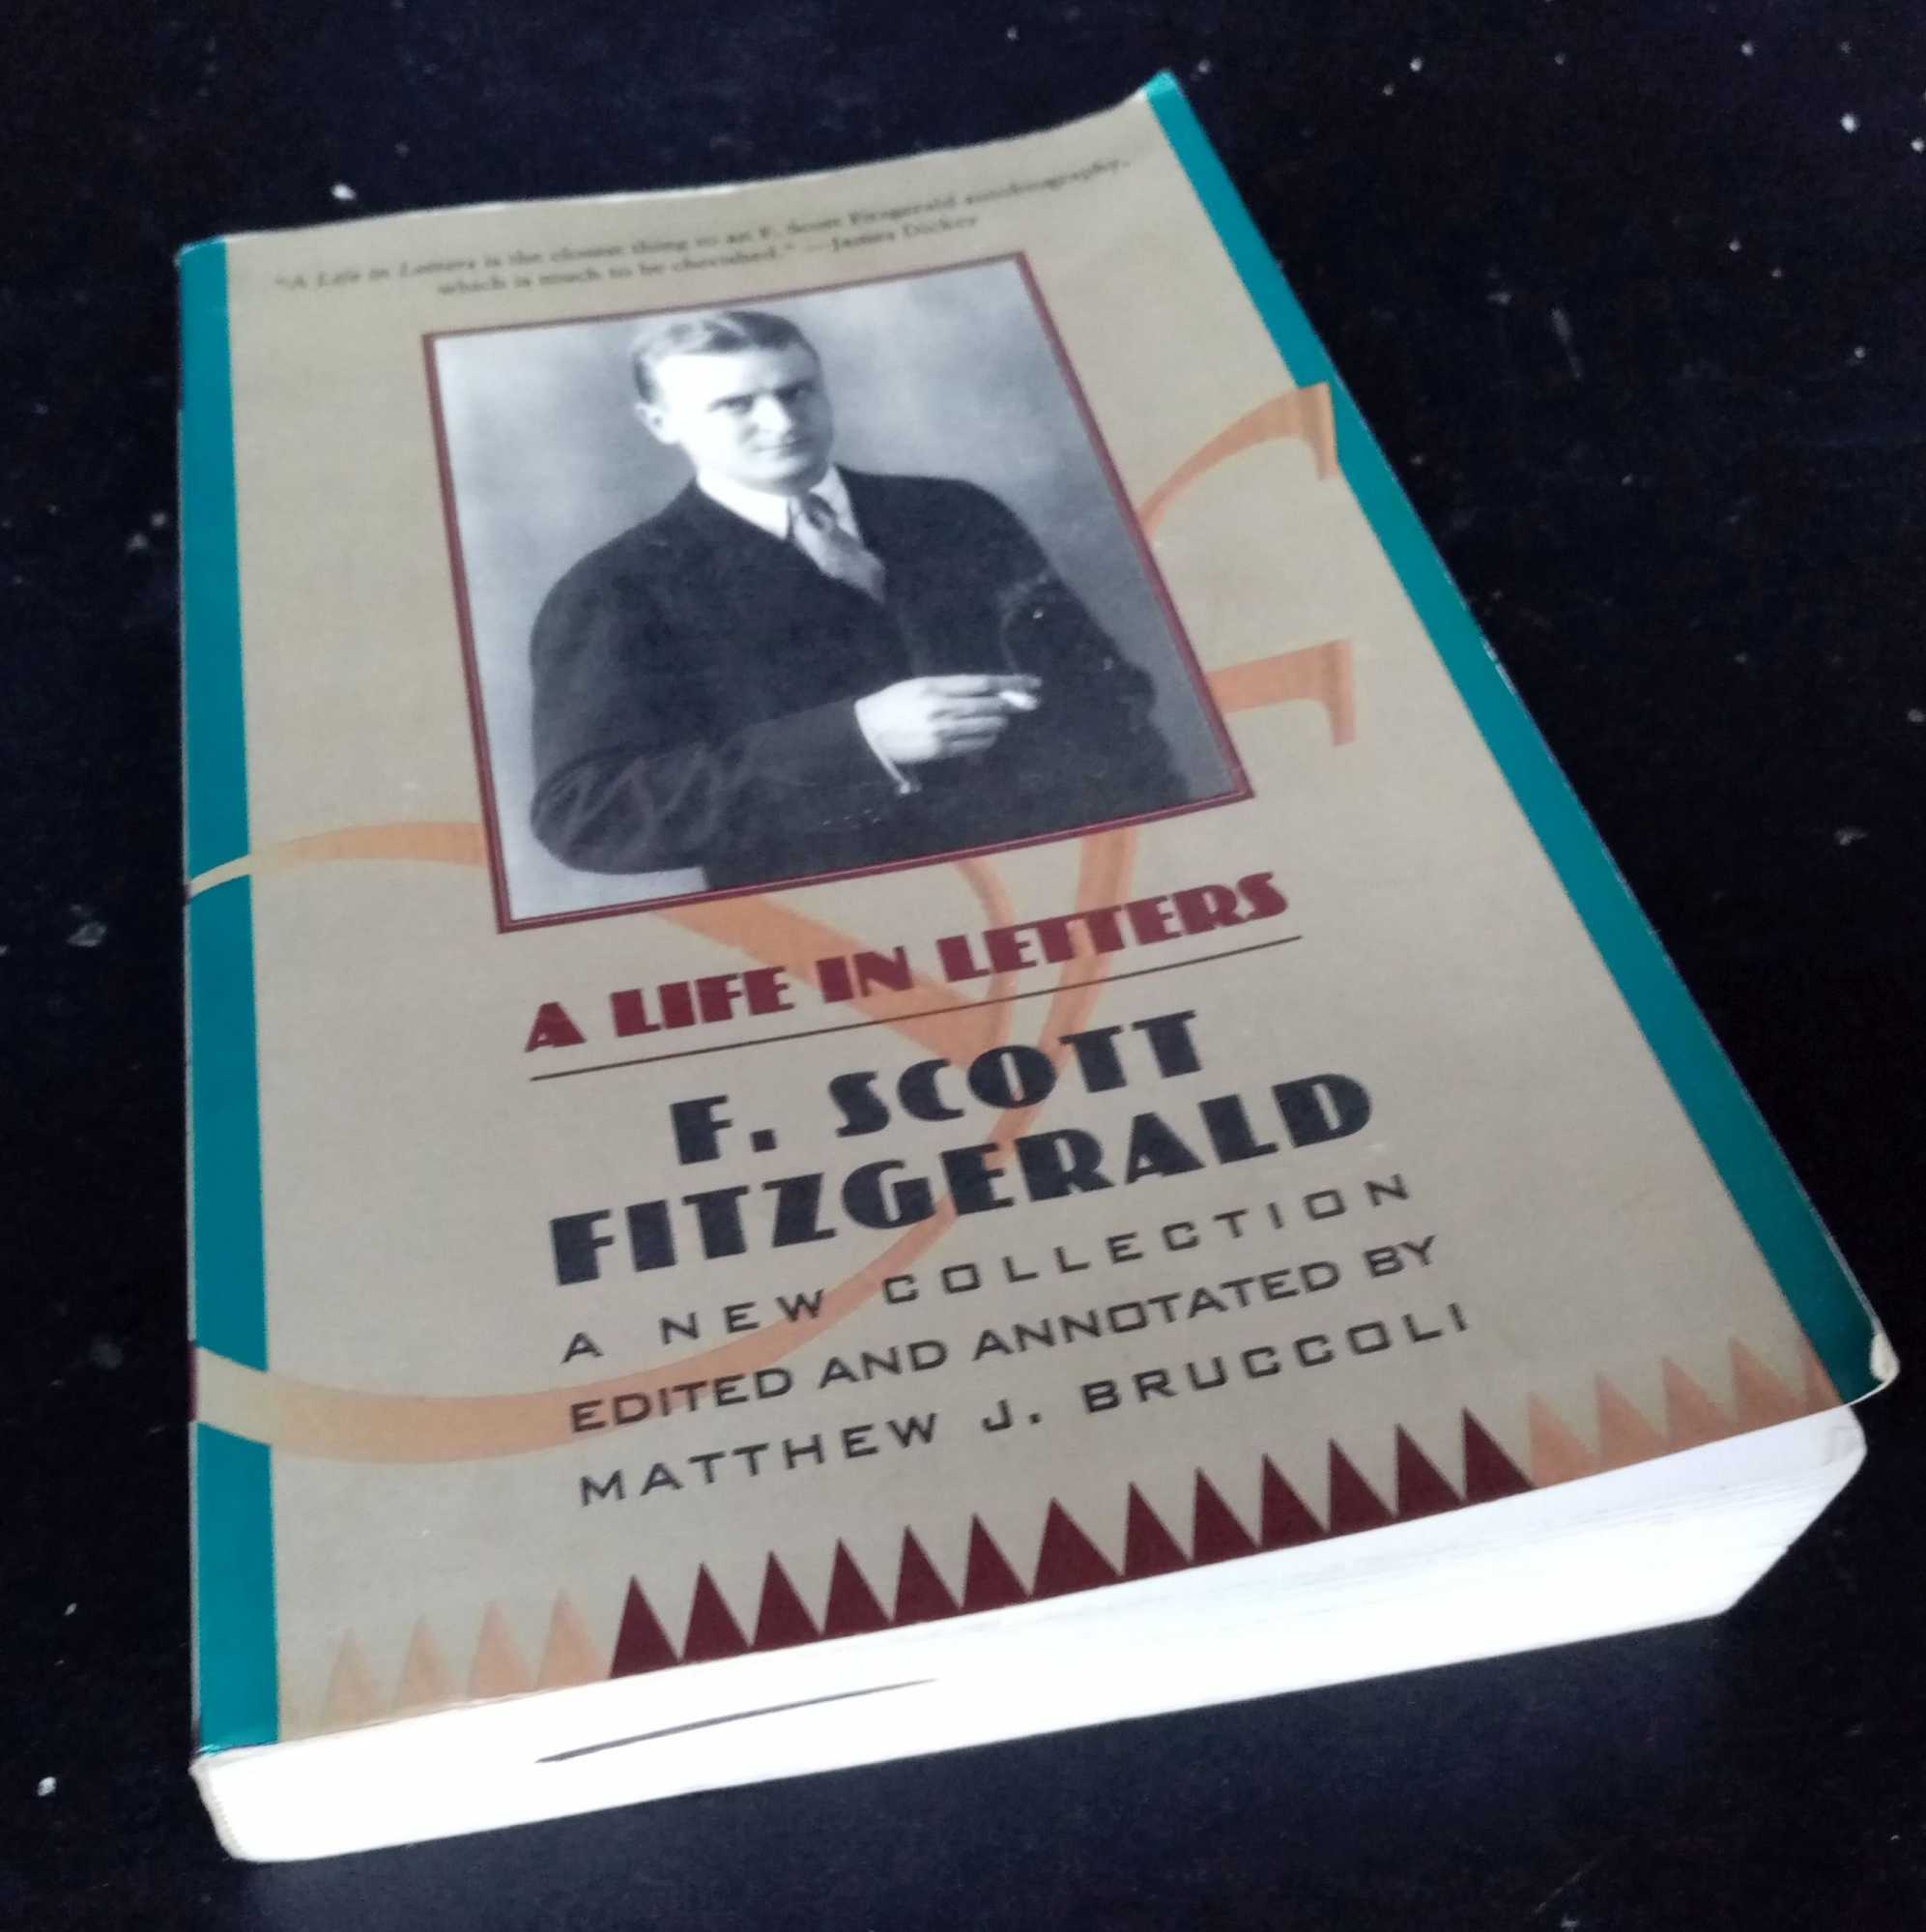 F. Scott Fitzgerald. Matthew J. Bruccoli, ed. - F. Scott Fitzgerald: A Life in Letters: A New Collection